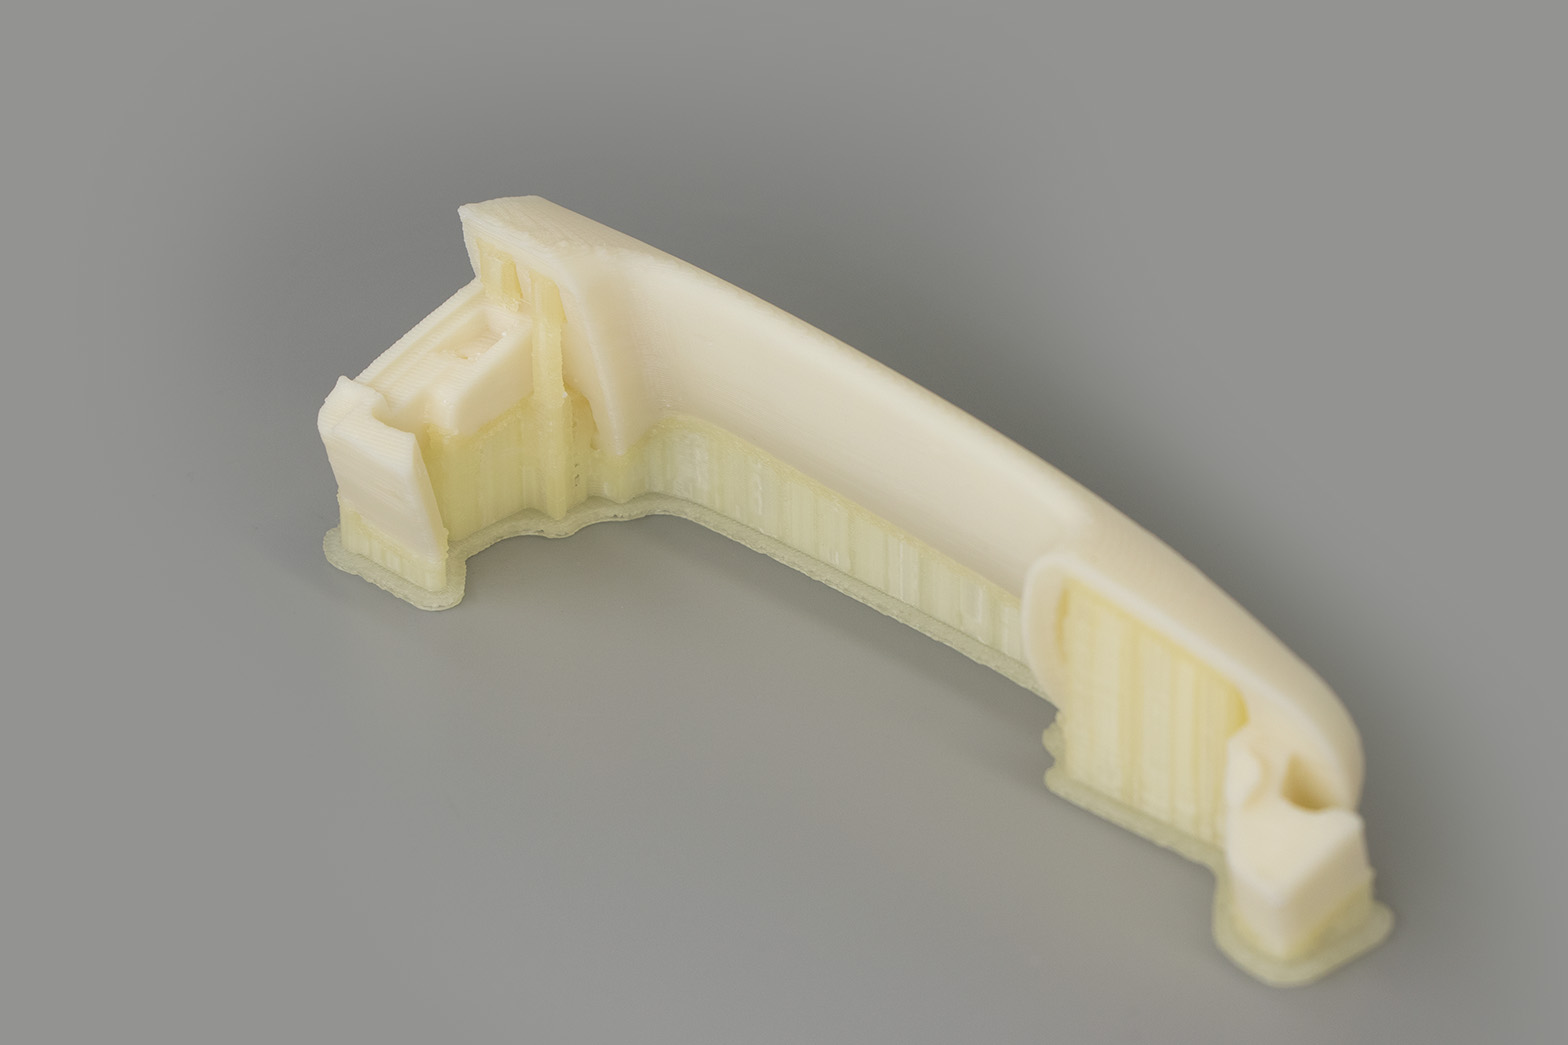 工业3D打印机|桌面级3D打印机厂家|专业3D打印材料公司-上海远铸智能